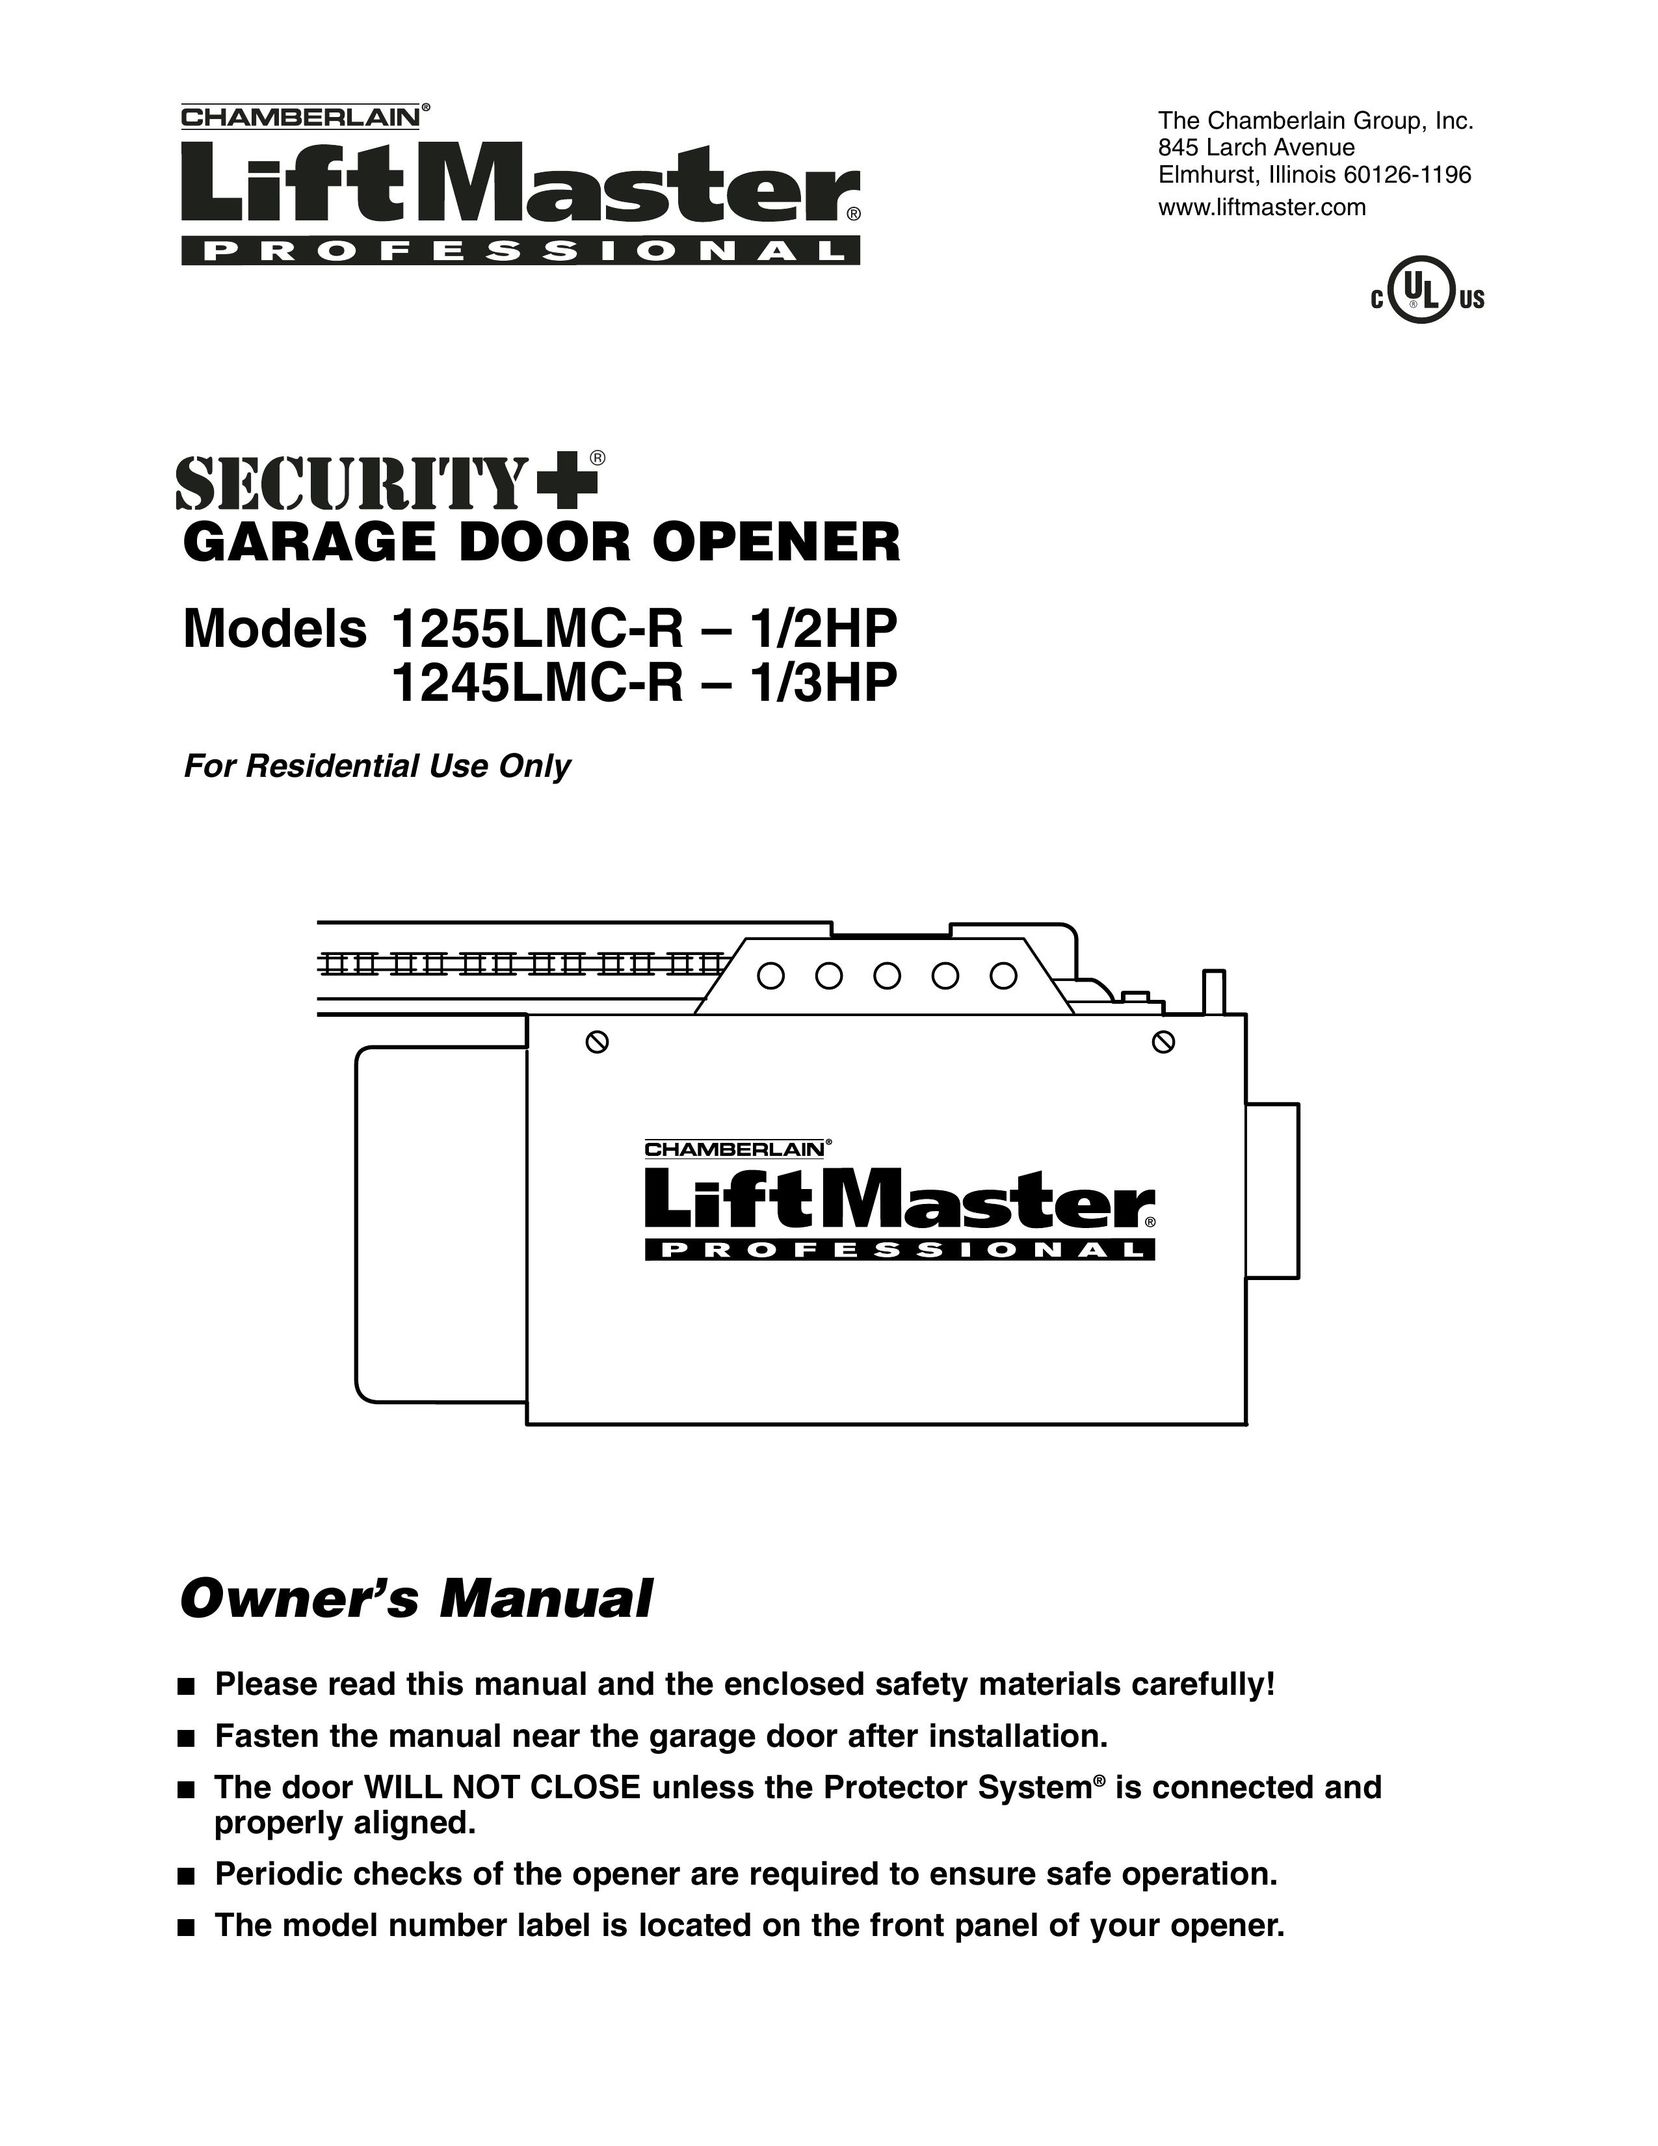 Chamberlain 1245LMC-R-1/3HP Garage Door Opener User Manual (Page 1)